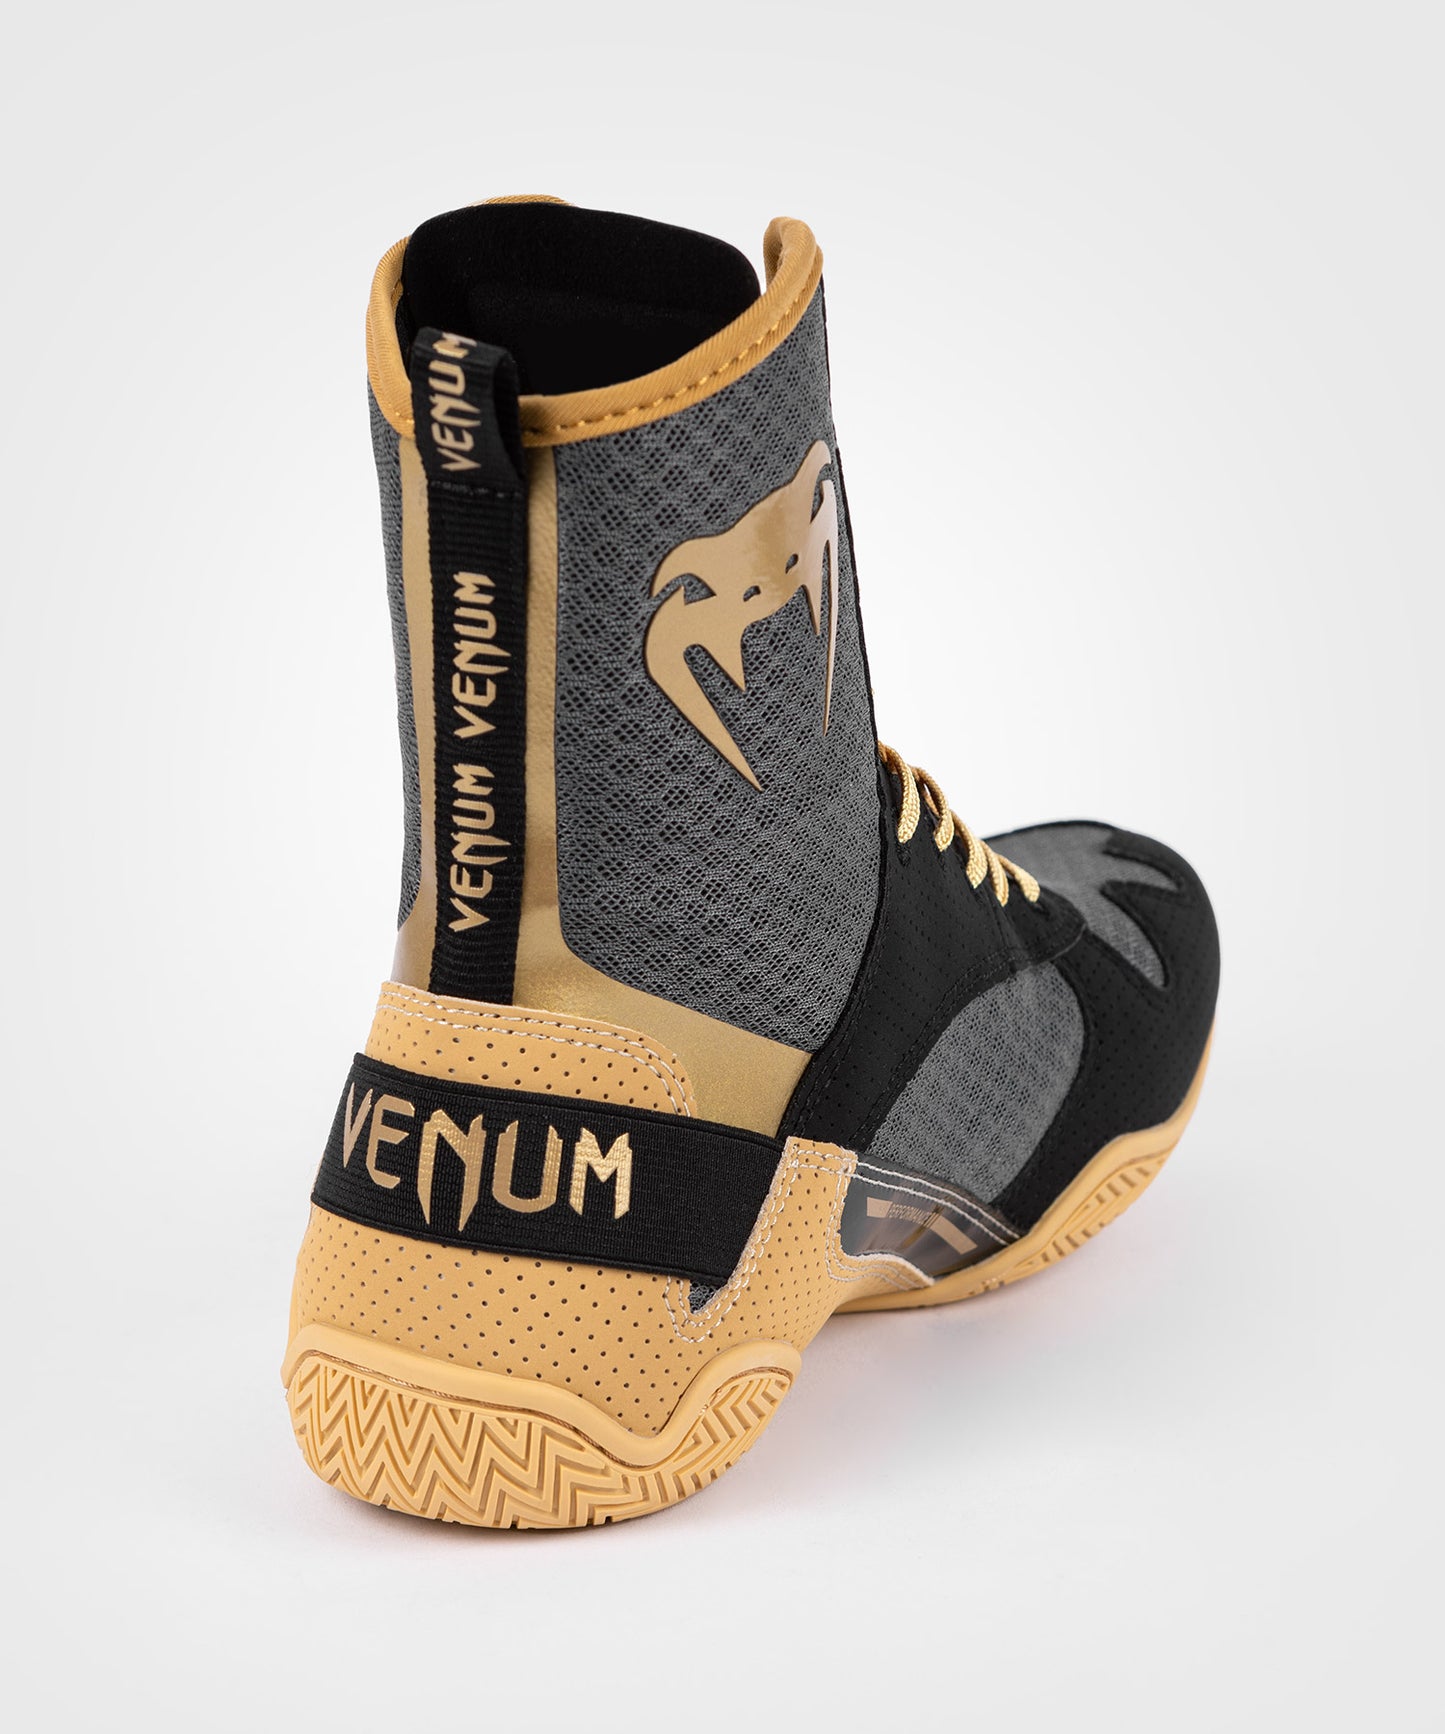 Venum Elite Boxing Shoes - Black/Beige